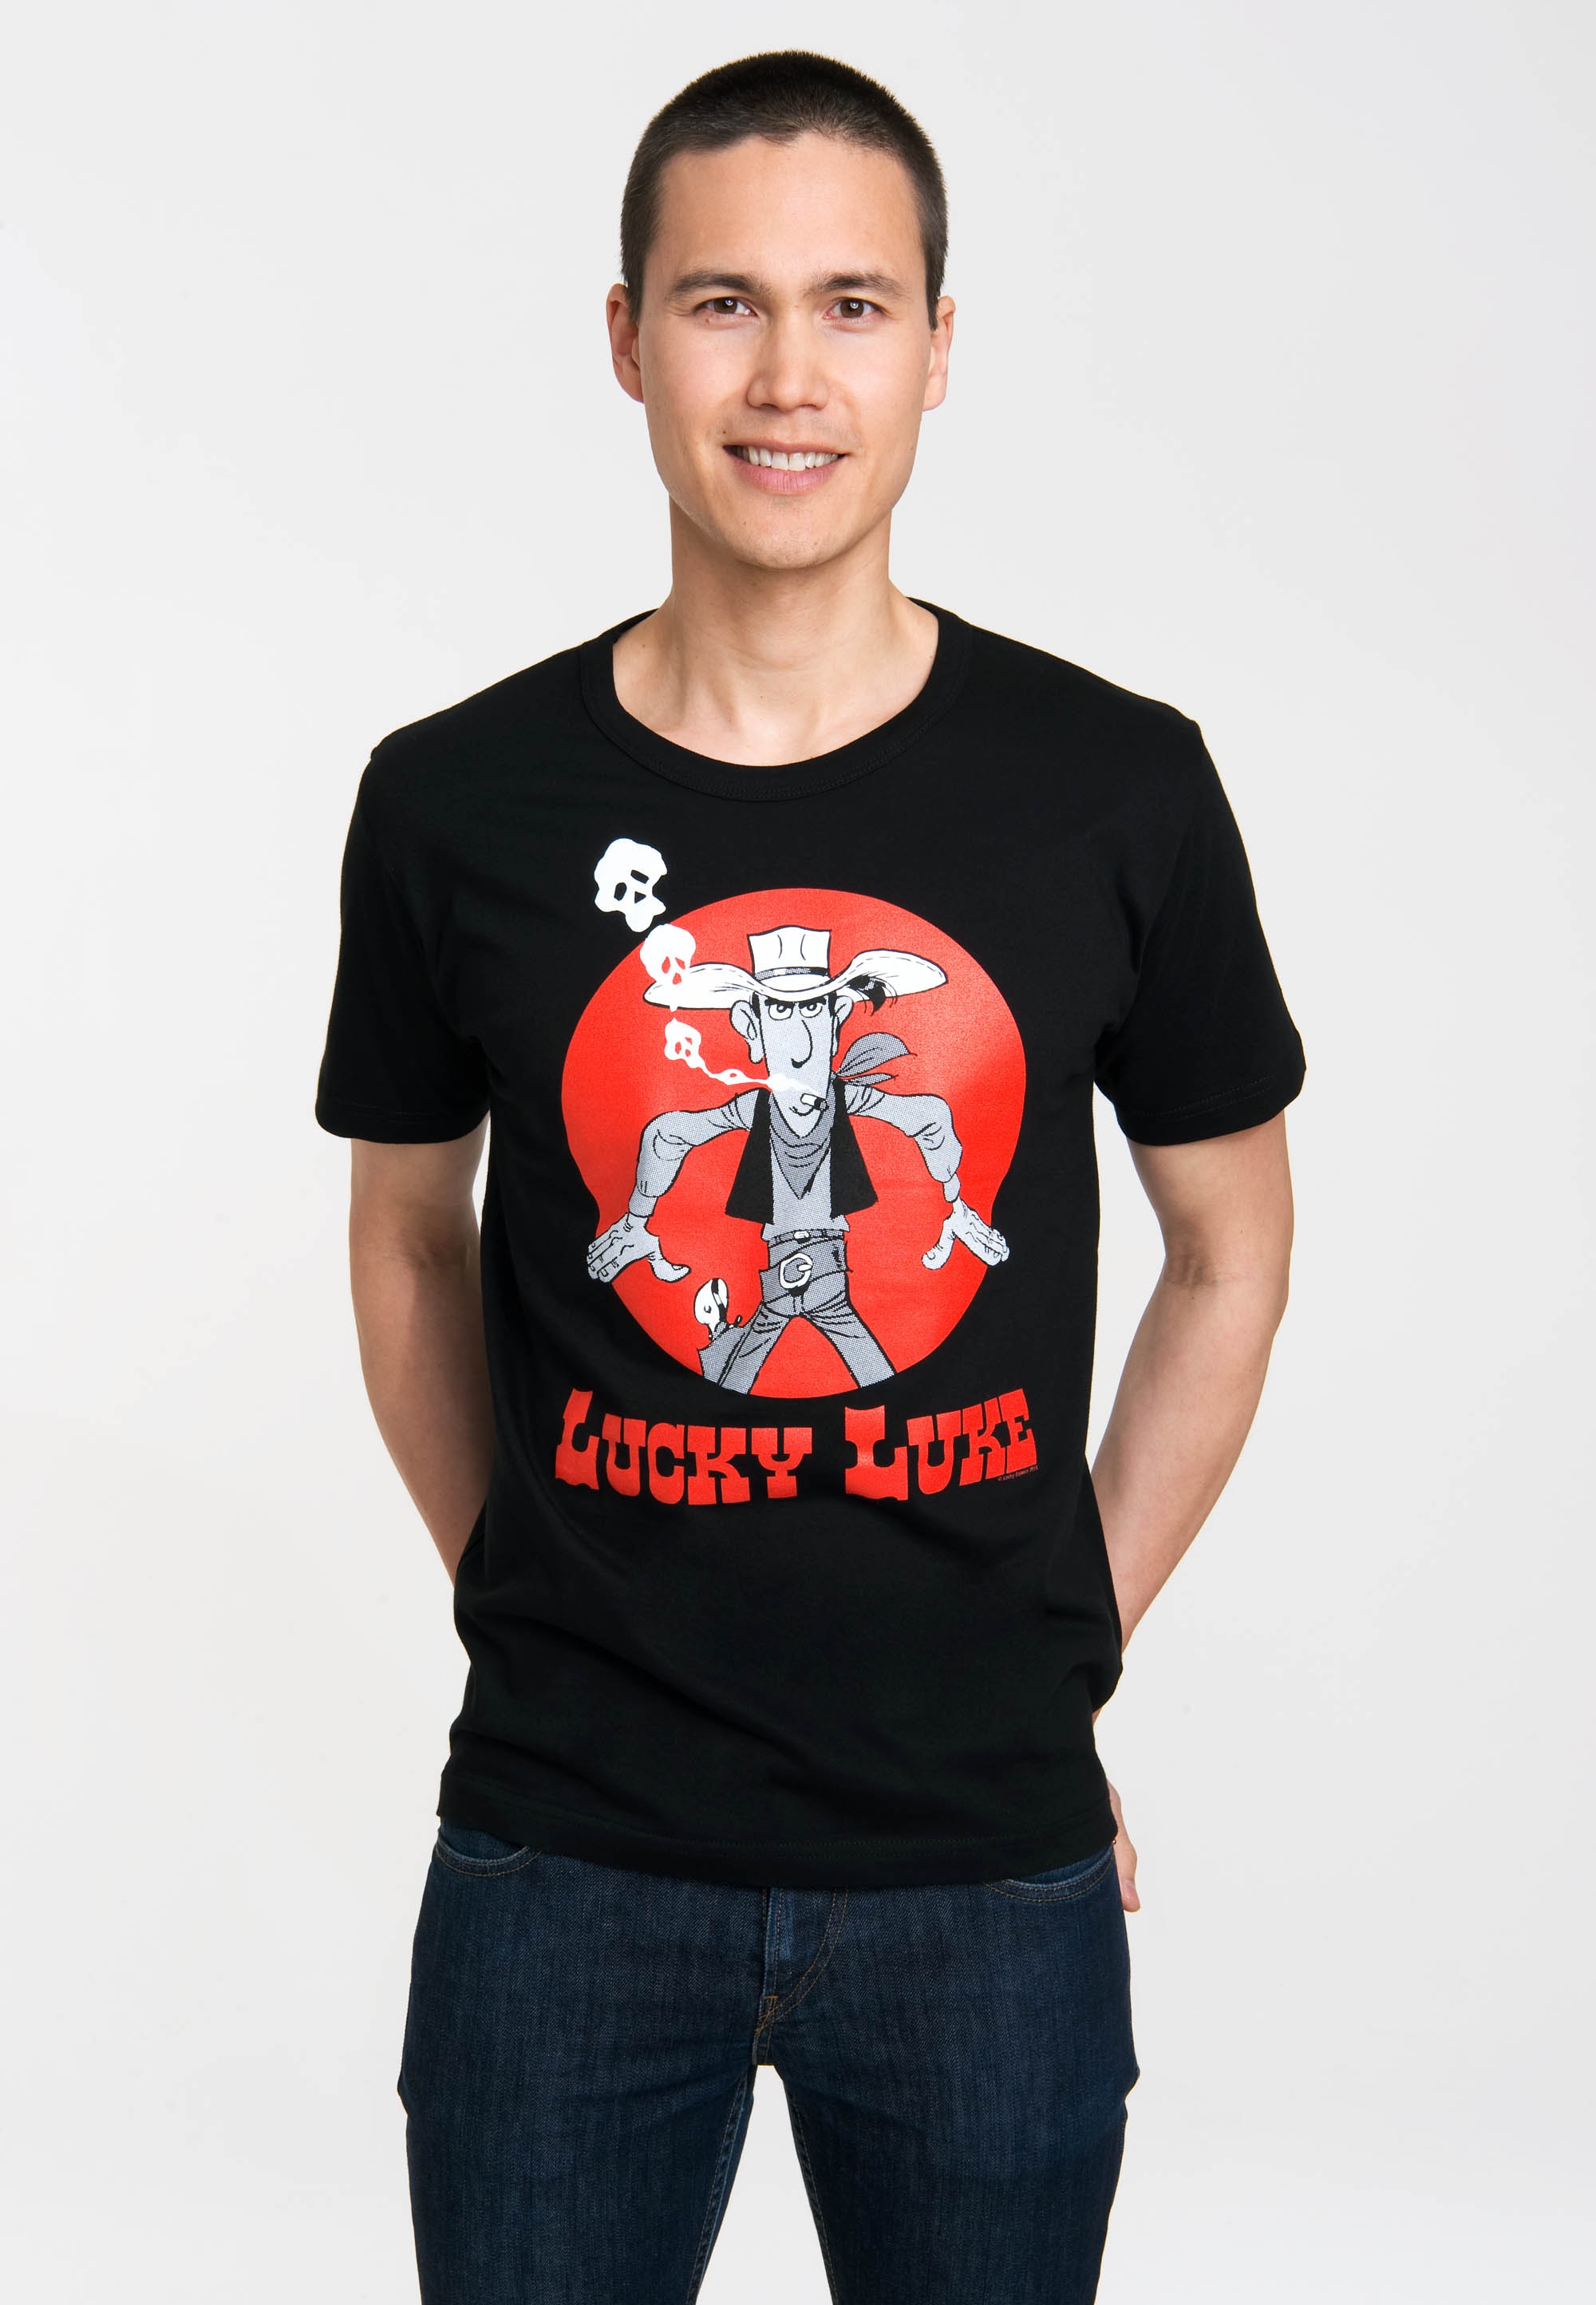 Logoshirt Comic - Cowboy - Lucky Luke - Daisy Town - T-Shirt Herren - schwarz - Lizenziertes Originaldesign, Größe L